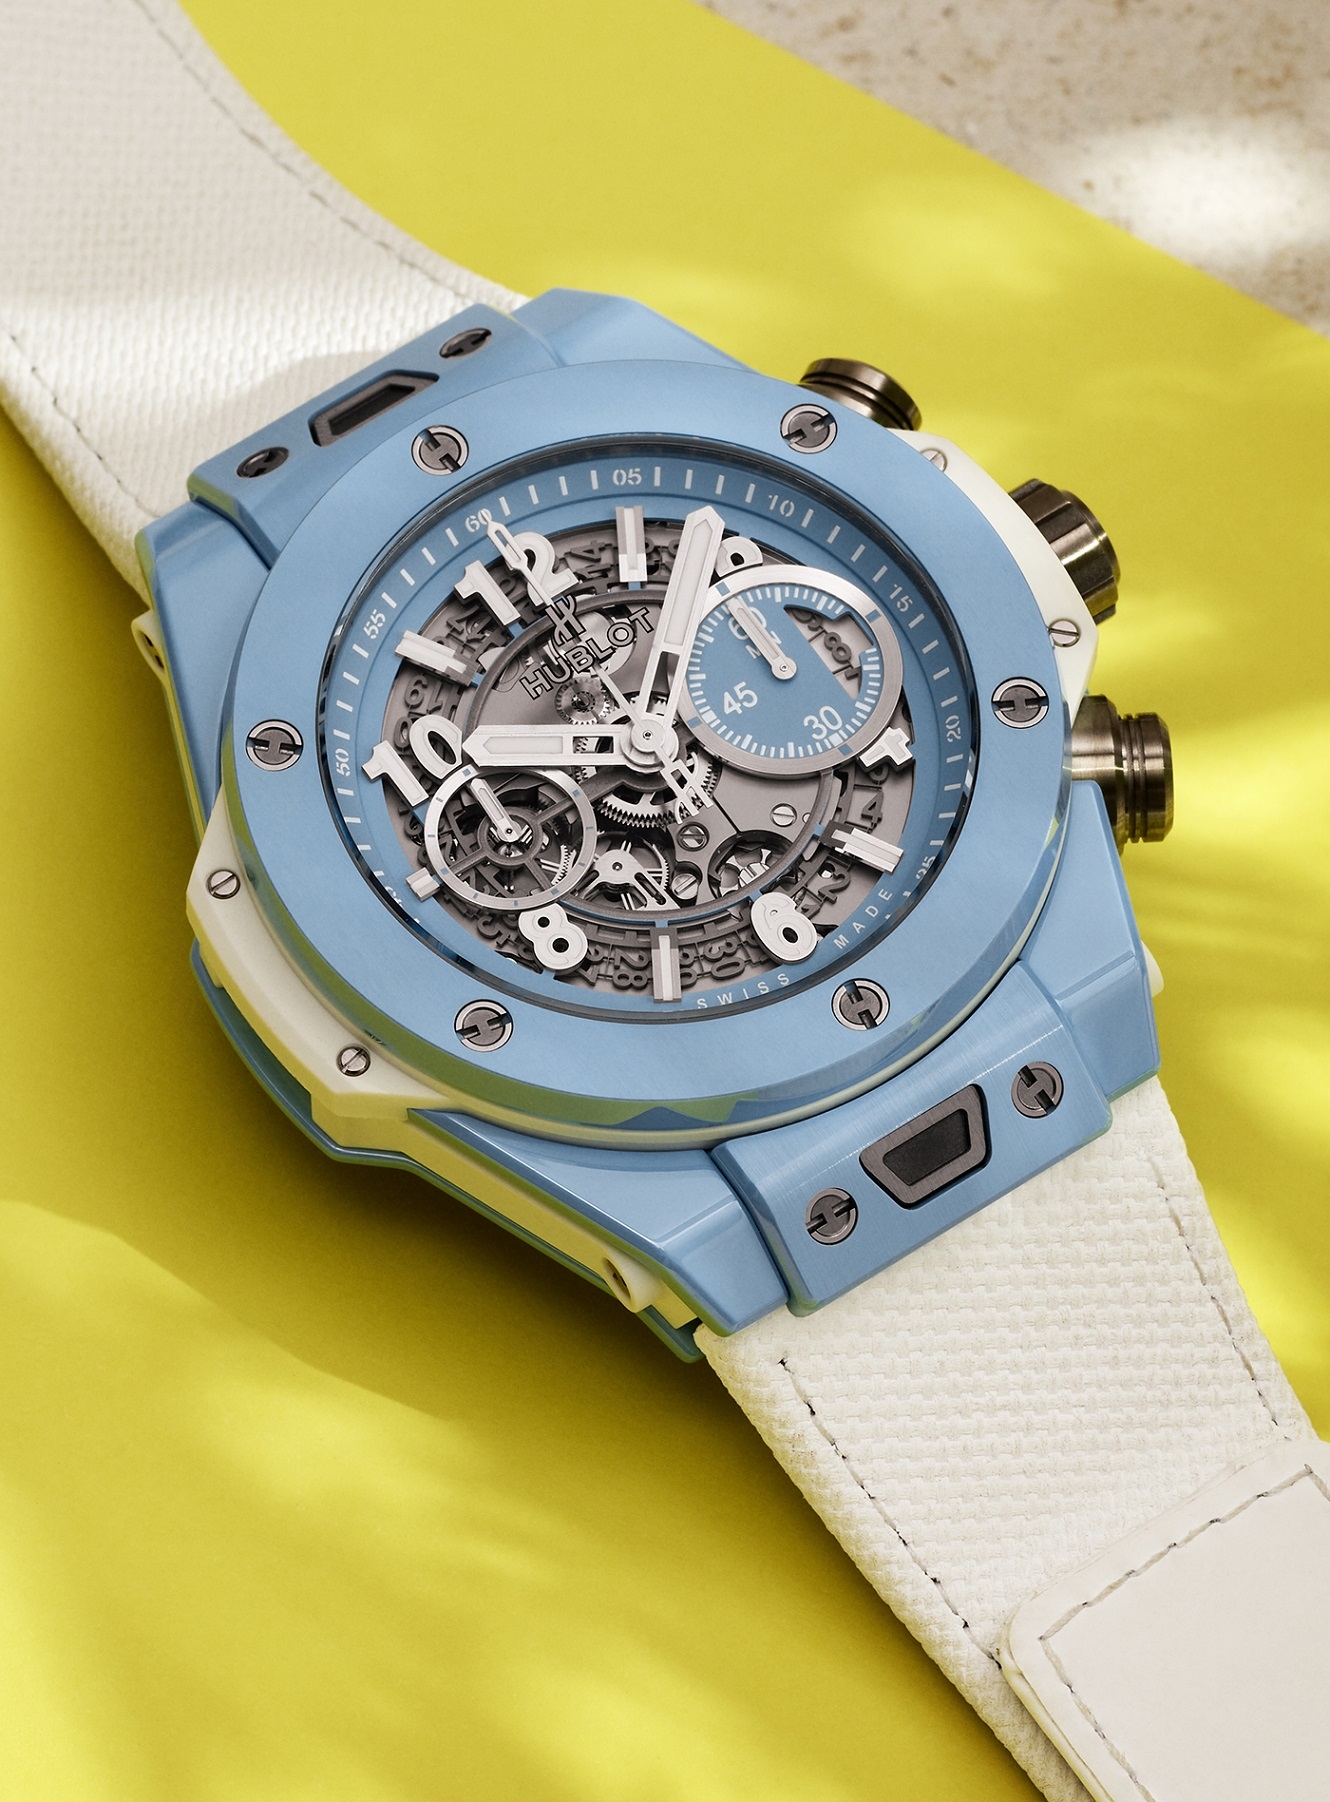 Giải nhiệt mùa hè với mẫu đồng hồ Hublot Big Bang Unico 45 Sky Blue giới hạn